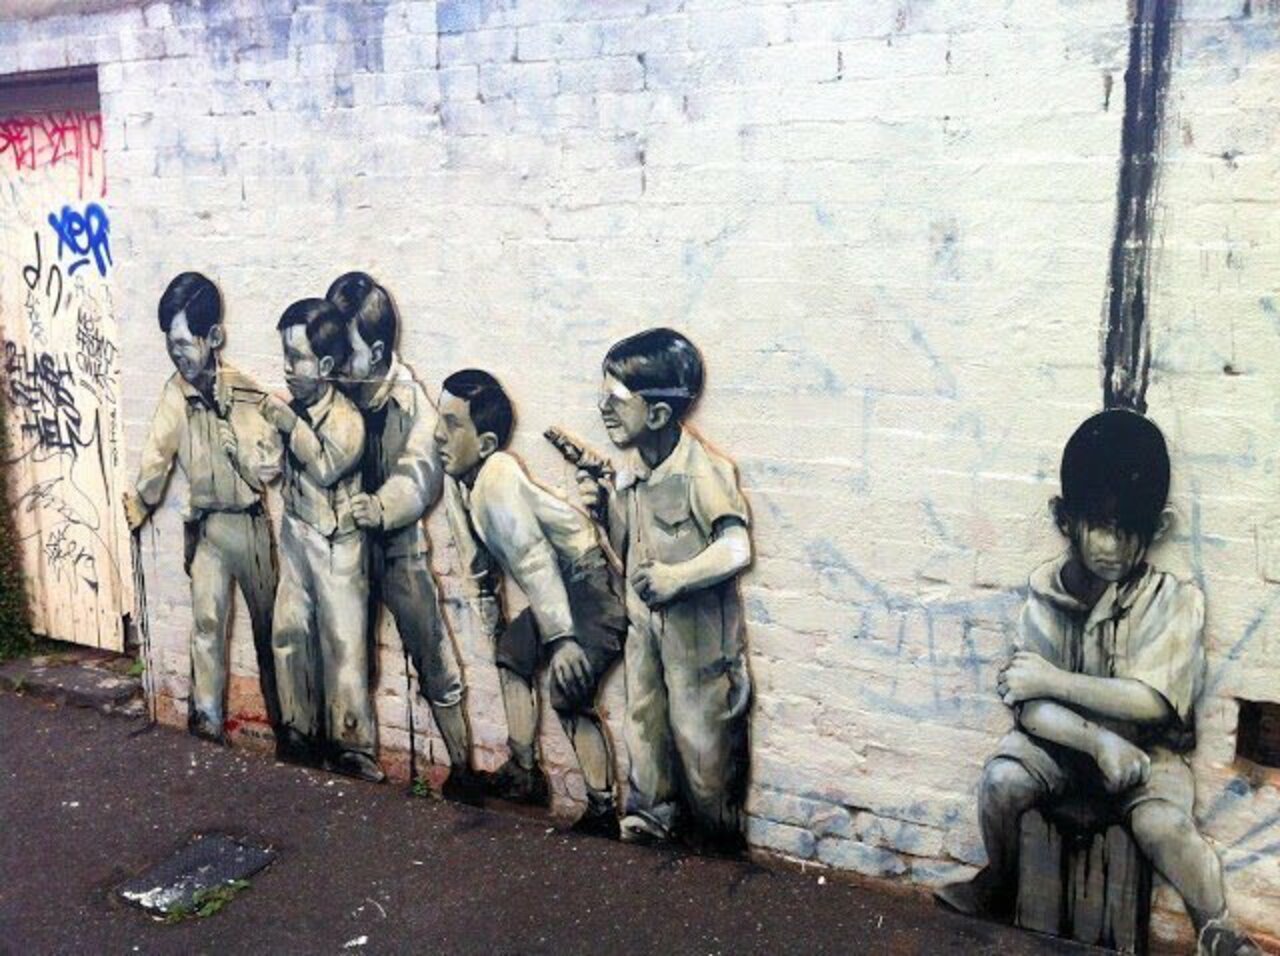 Mural Taylor White, Melbourne, Australia #Streetart #urbanart #graffiti #mural #art #Melbourne #Australia https://t.co/9fDhVJg7dP